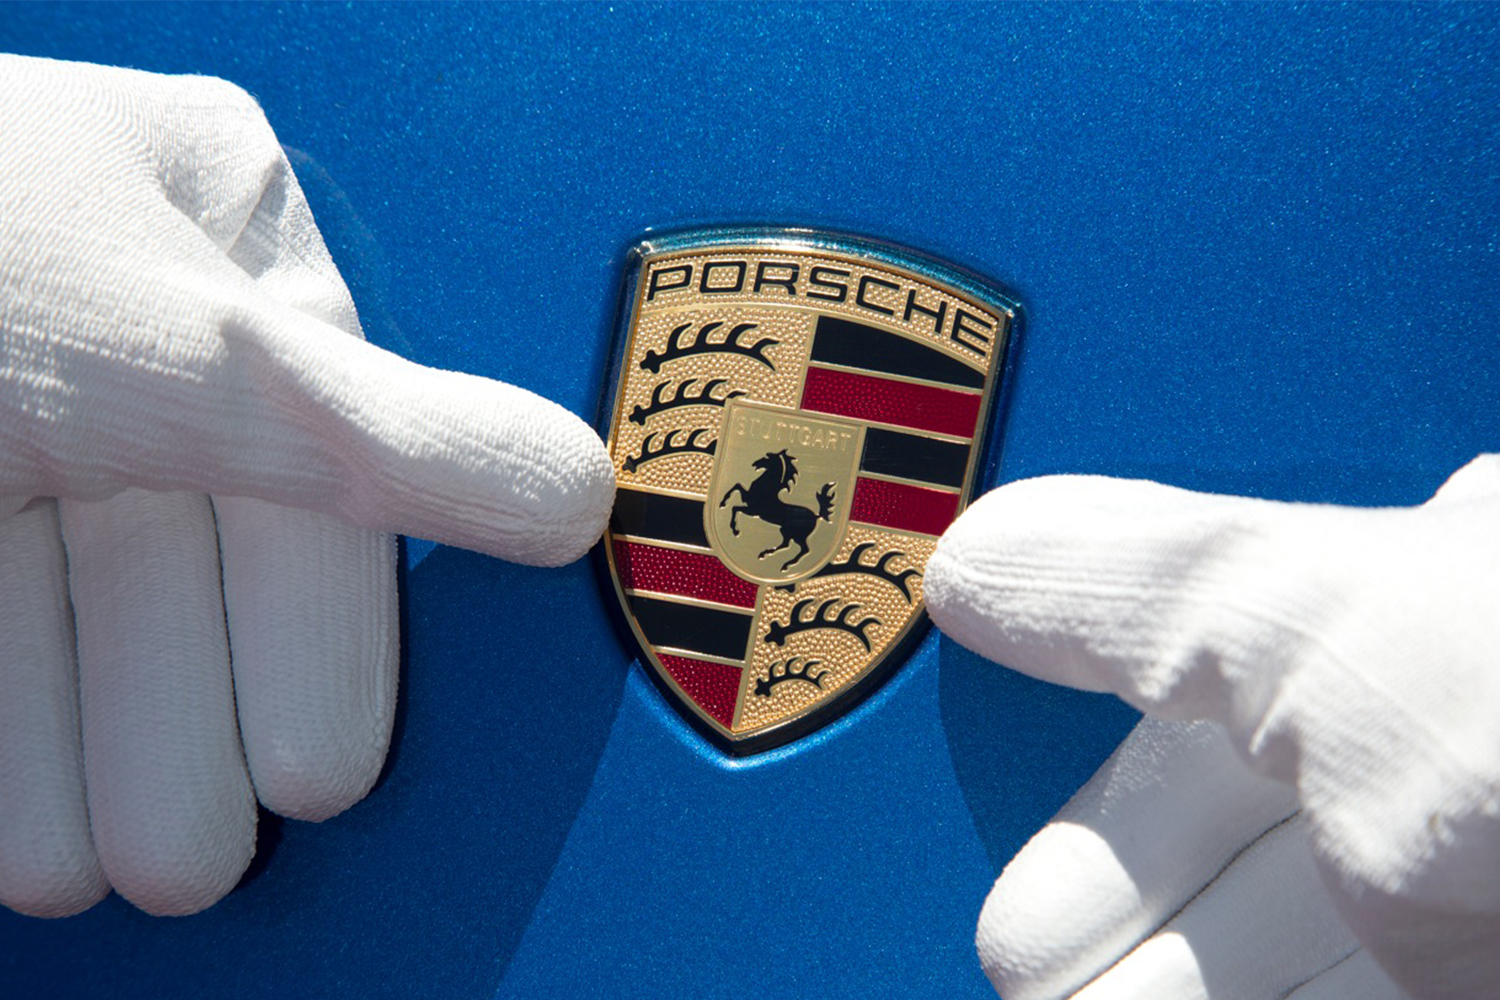 Porsche sports car emblem